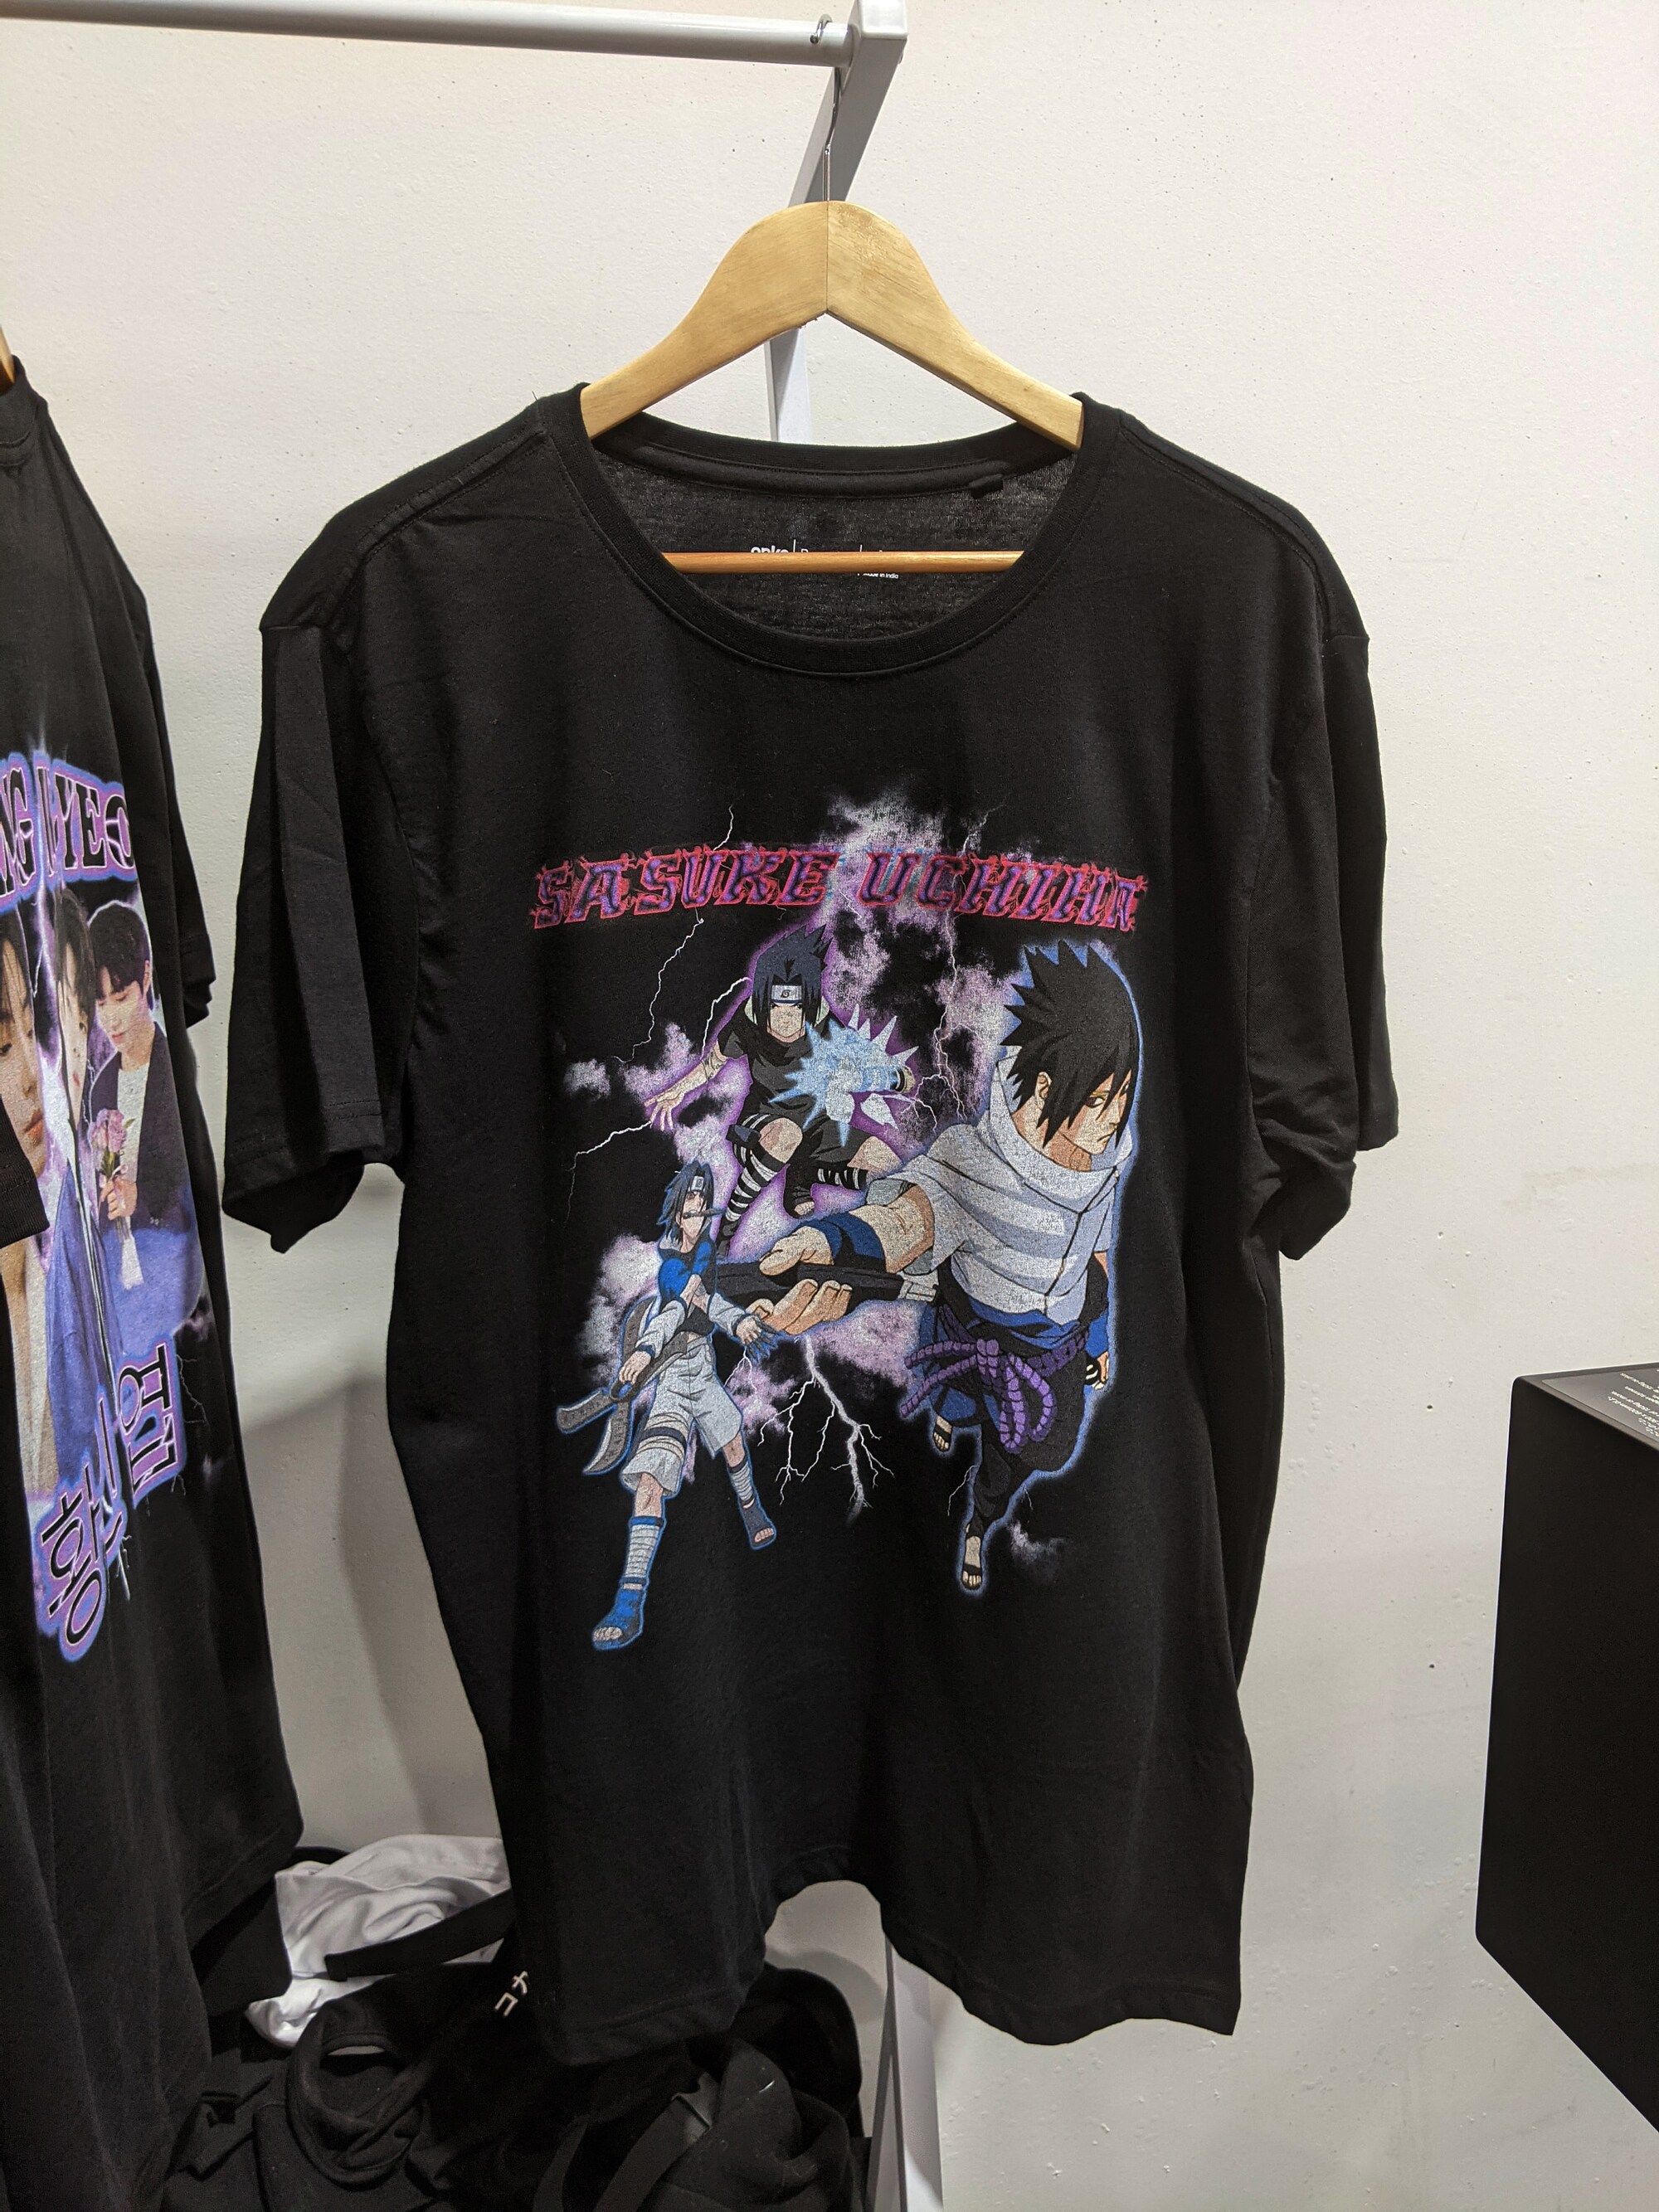 Discover Uchiha Sasuke Anime Vintage Style T-Shirt!